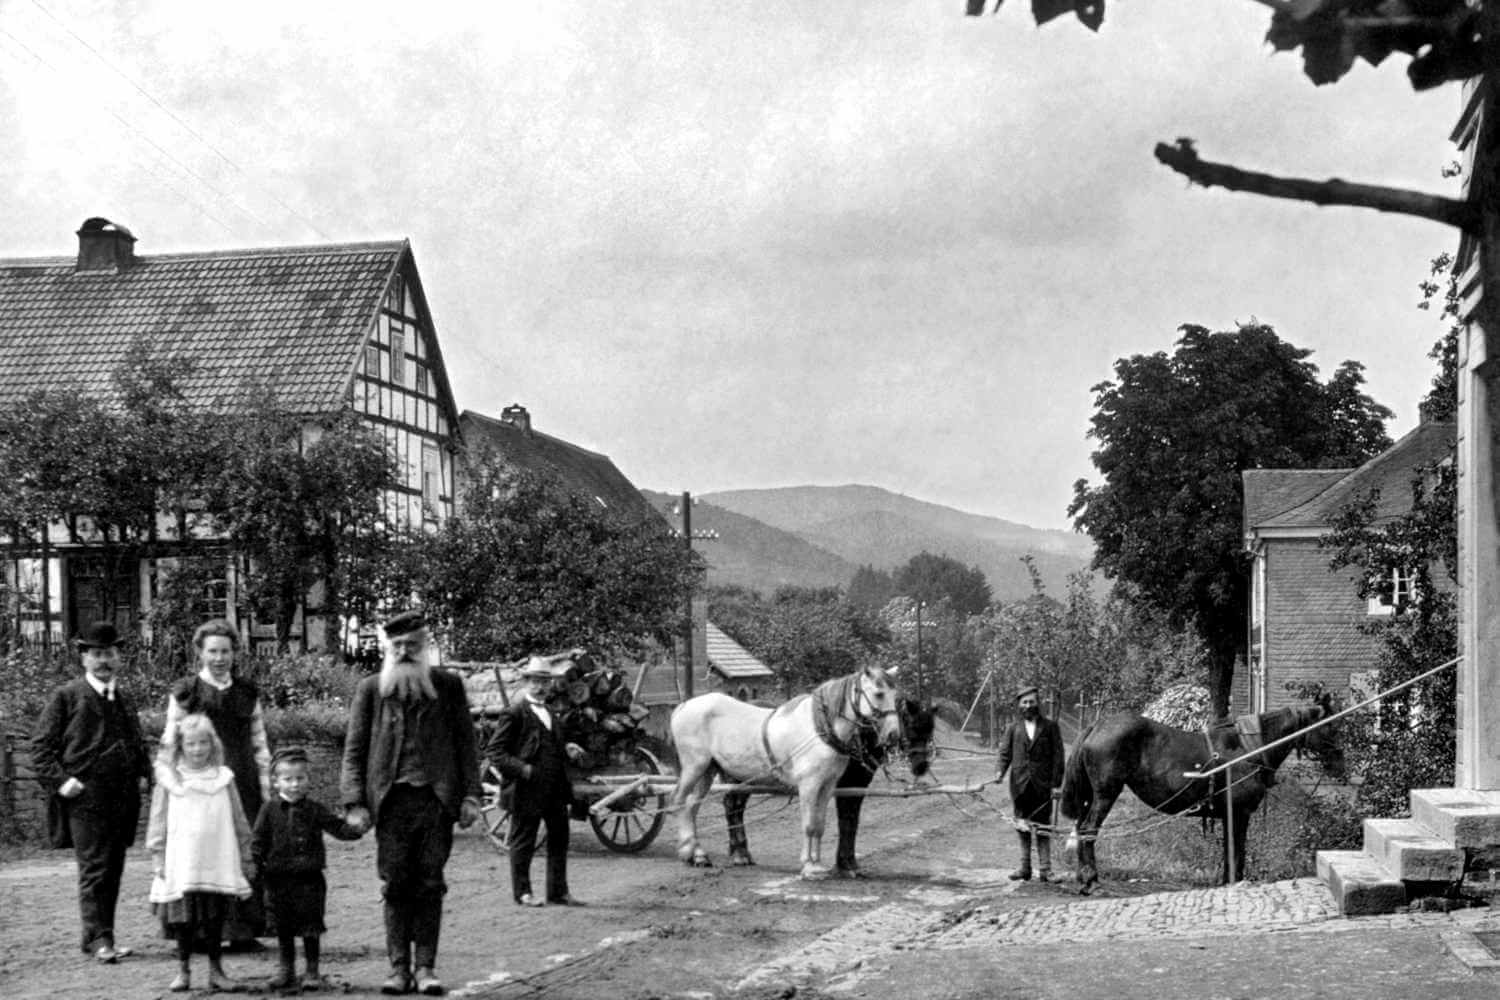 Gruppenfoto aus dem Jahre 1900 vor dem damaligen Hotel Diedrich